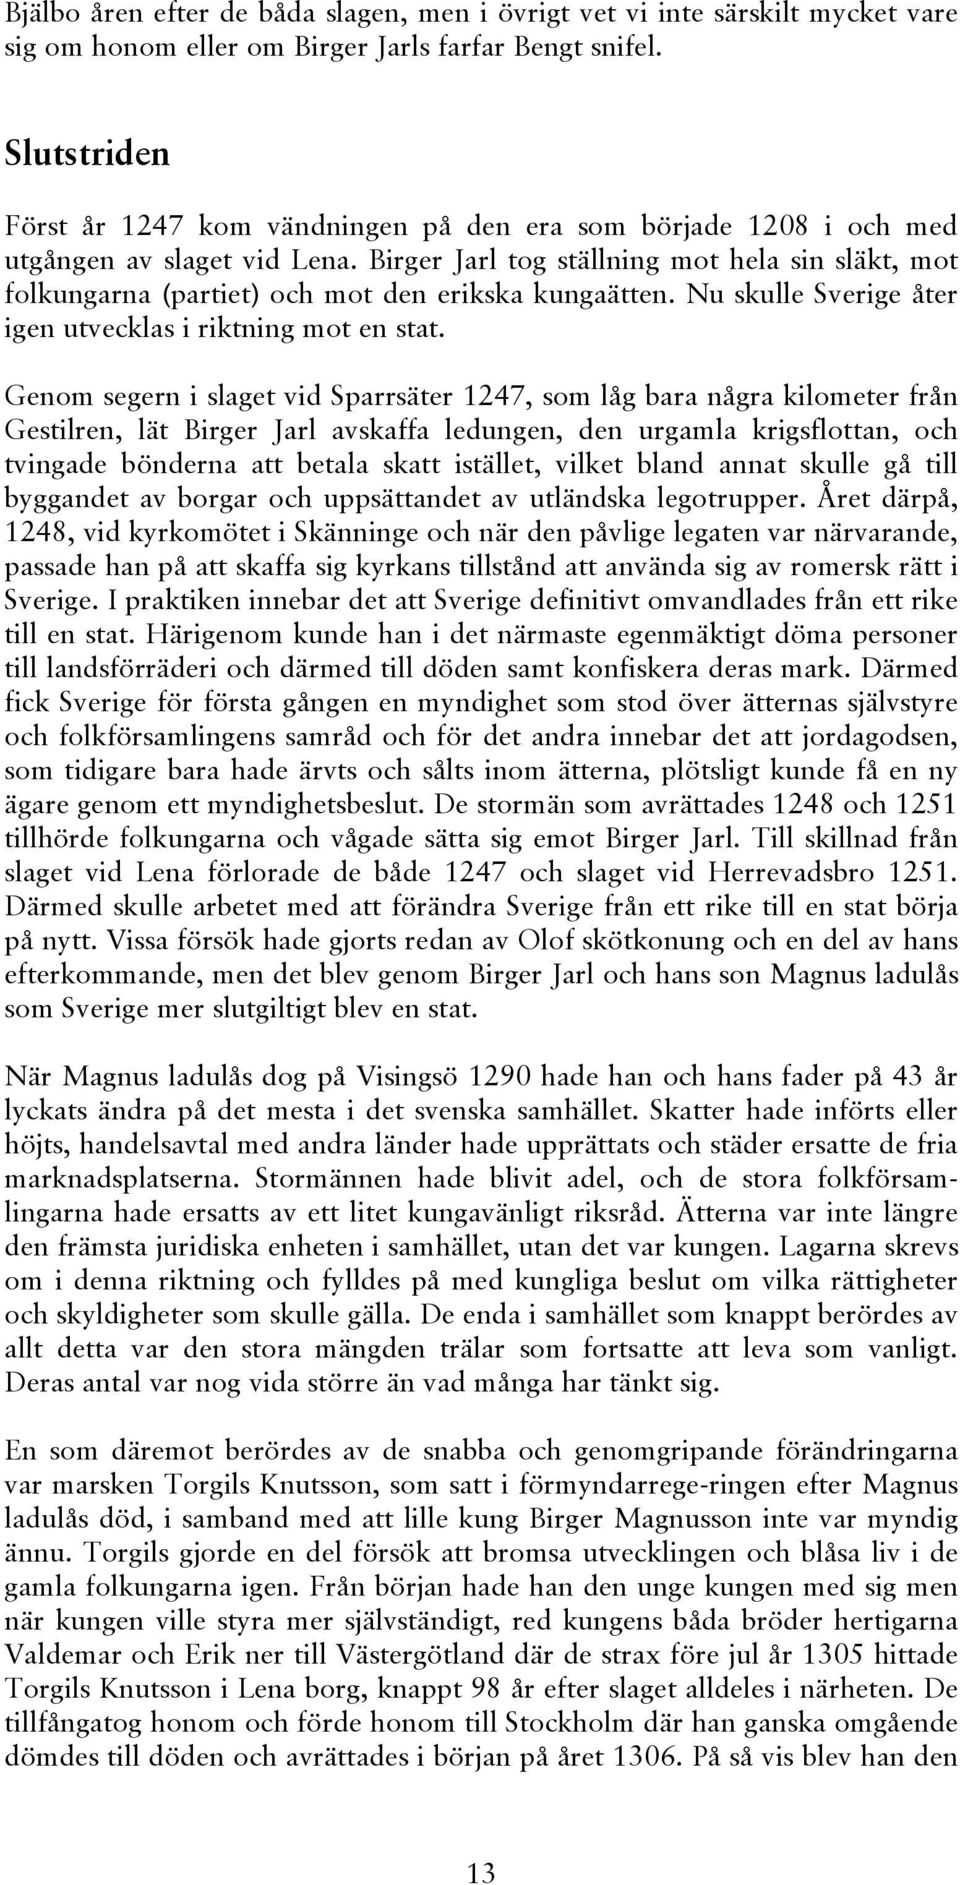 Birger Jarl tog ställning mot hela sin släkt, mot folkungarna (partiet) och mot den erikska kungaätten. Nu skulle Sverige åter igen utvecklas i riktning mot en stat.